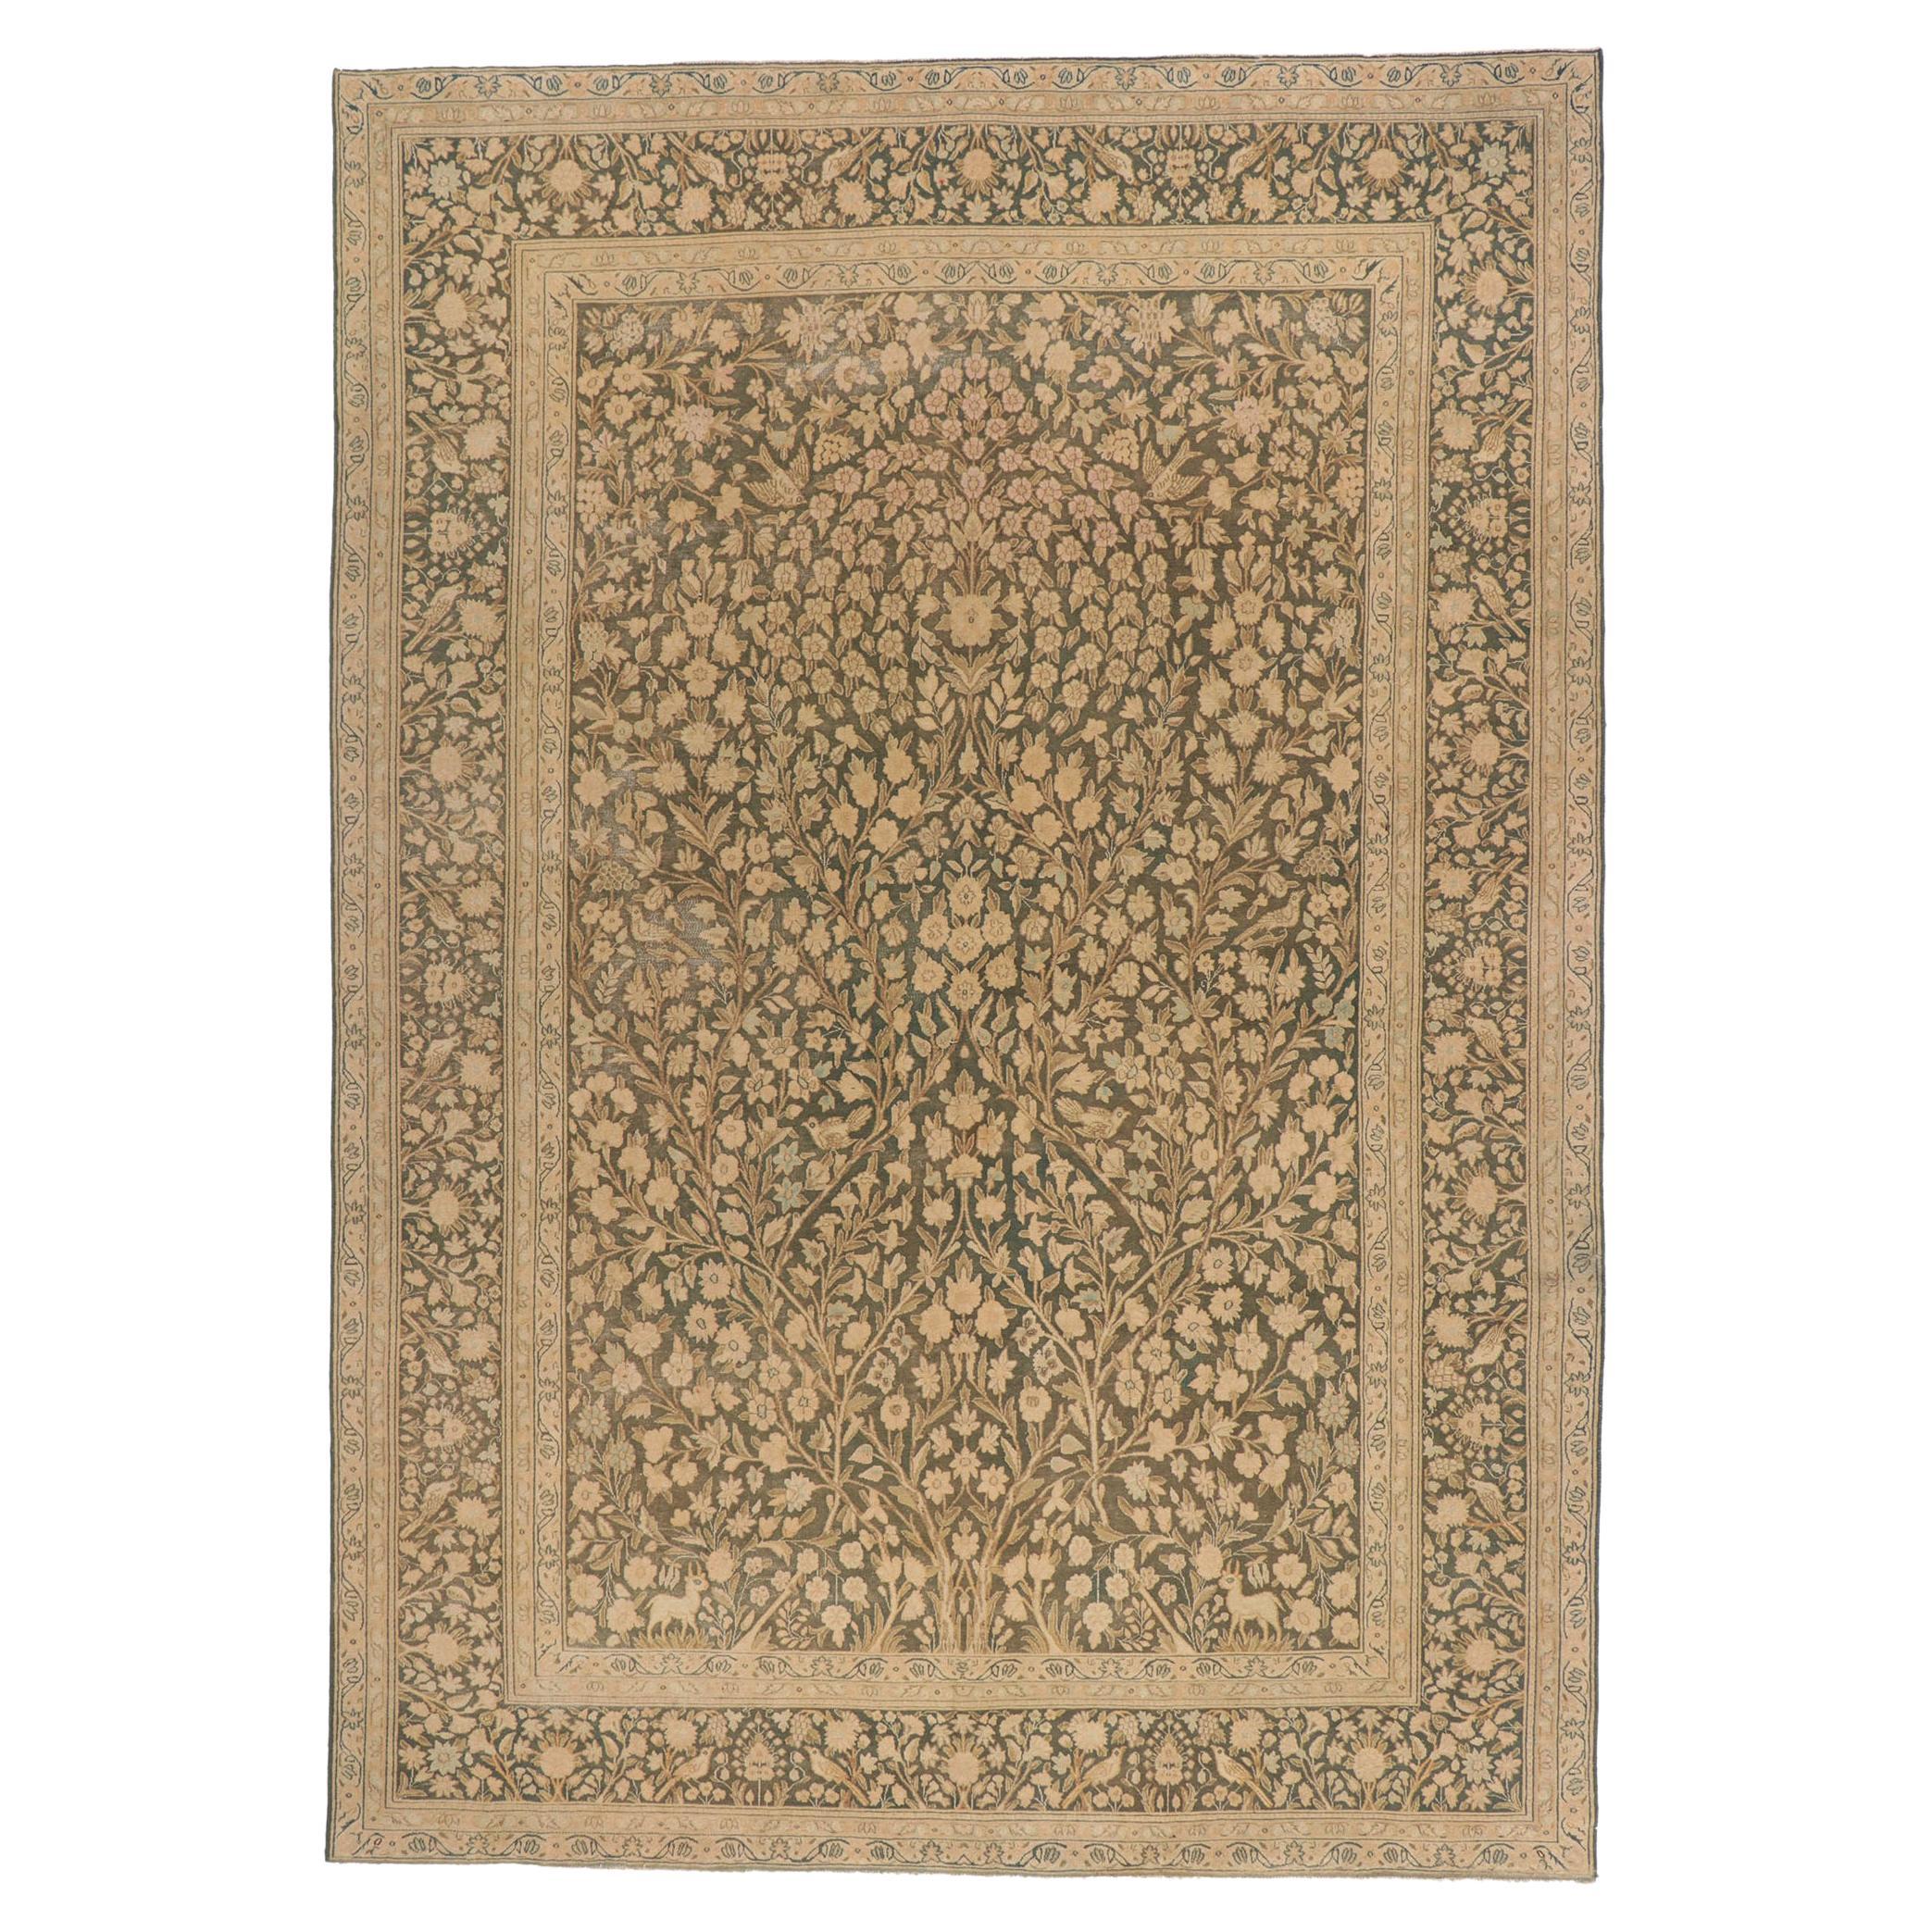 Persischer Täbris-Teppich im Vintage-Stil im Used-Look, Biophiles Design trifft auf Jugendstil